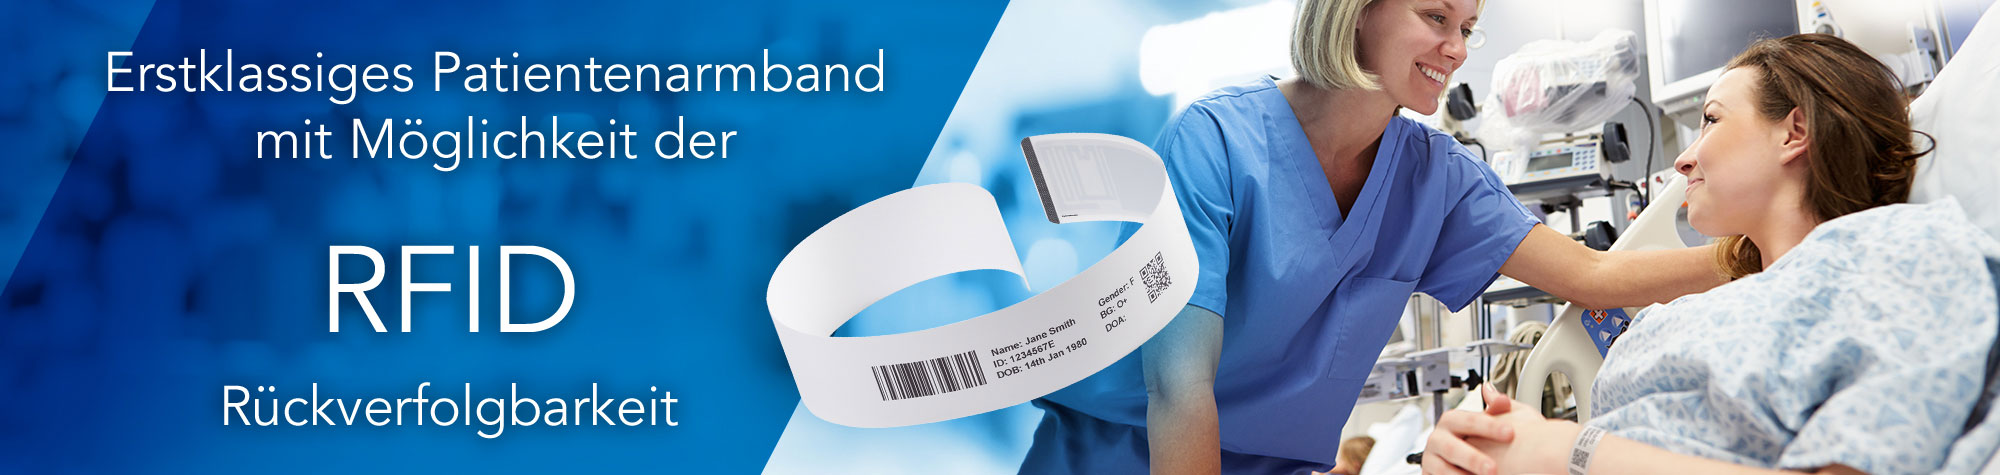 Erstklassiges Patientenarmband mit Möglichkeit der RFID Rückverfolgbarkeit